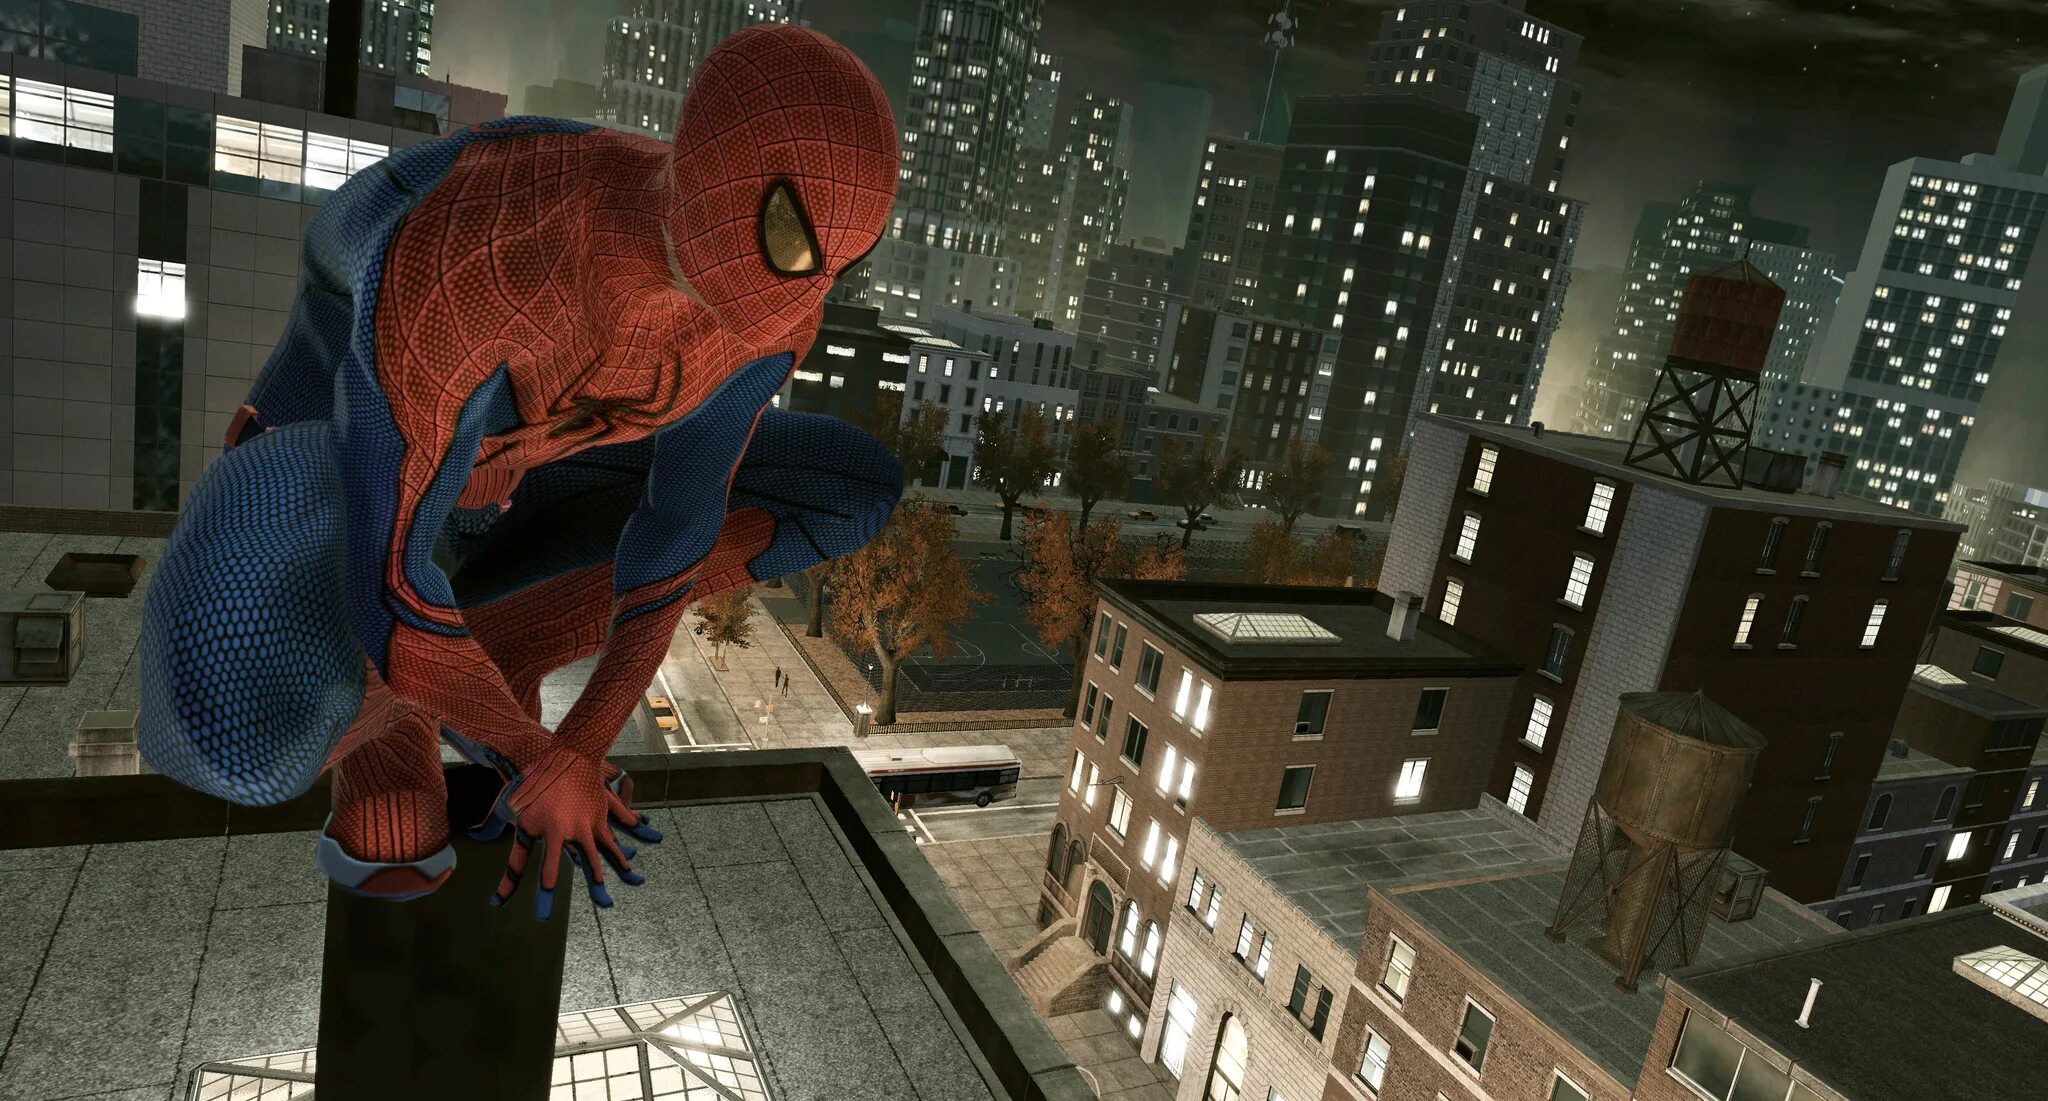 The amazing Spider-man (игра, 2012). The amazing Spider-man 2 игра. Человек паук амазинг игра. Человек паук эмейзинг 2 игра. Игры человек 2015